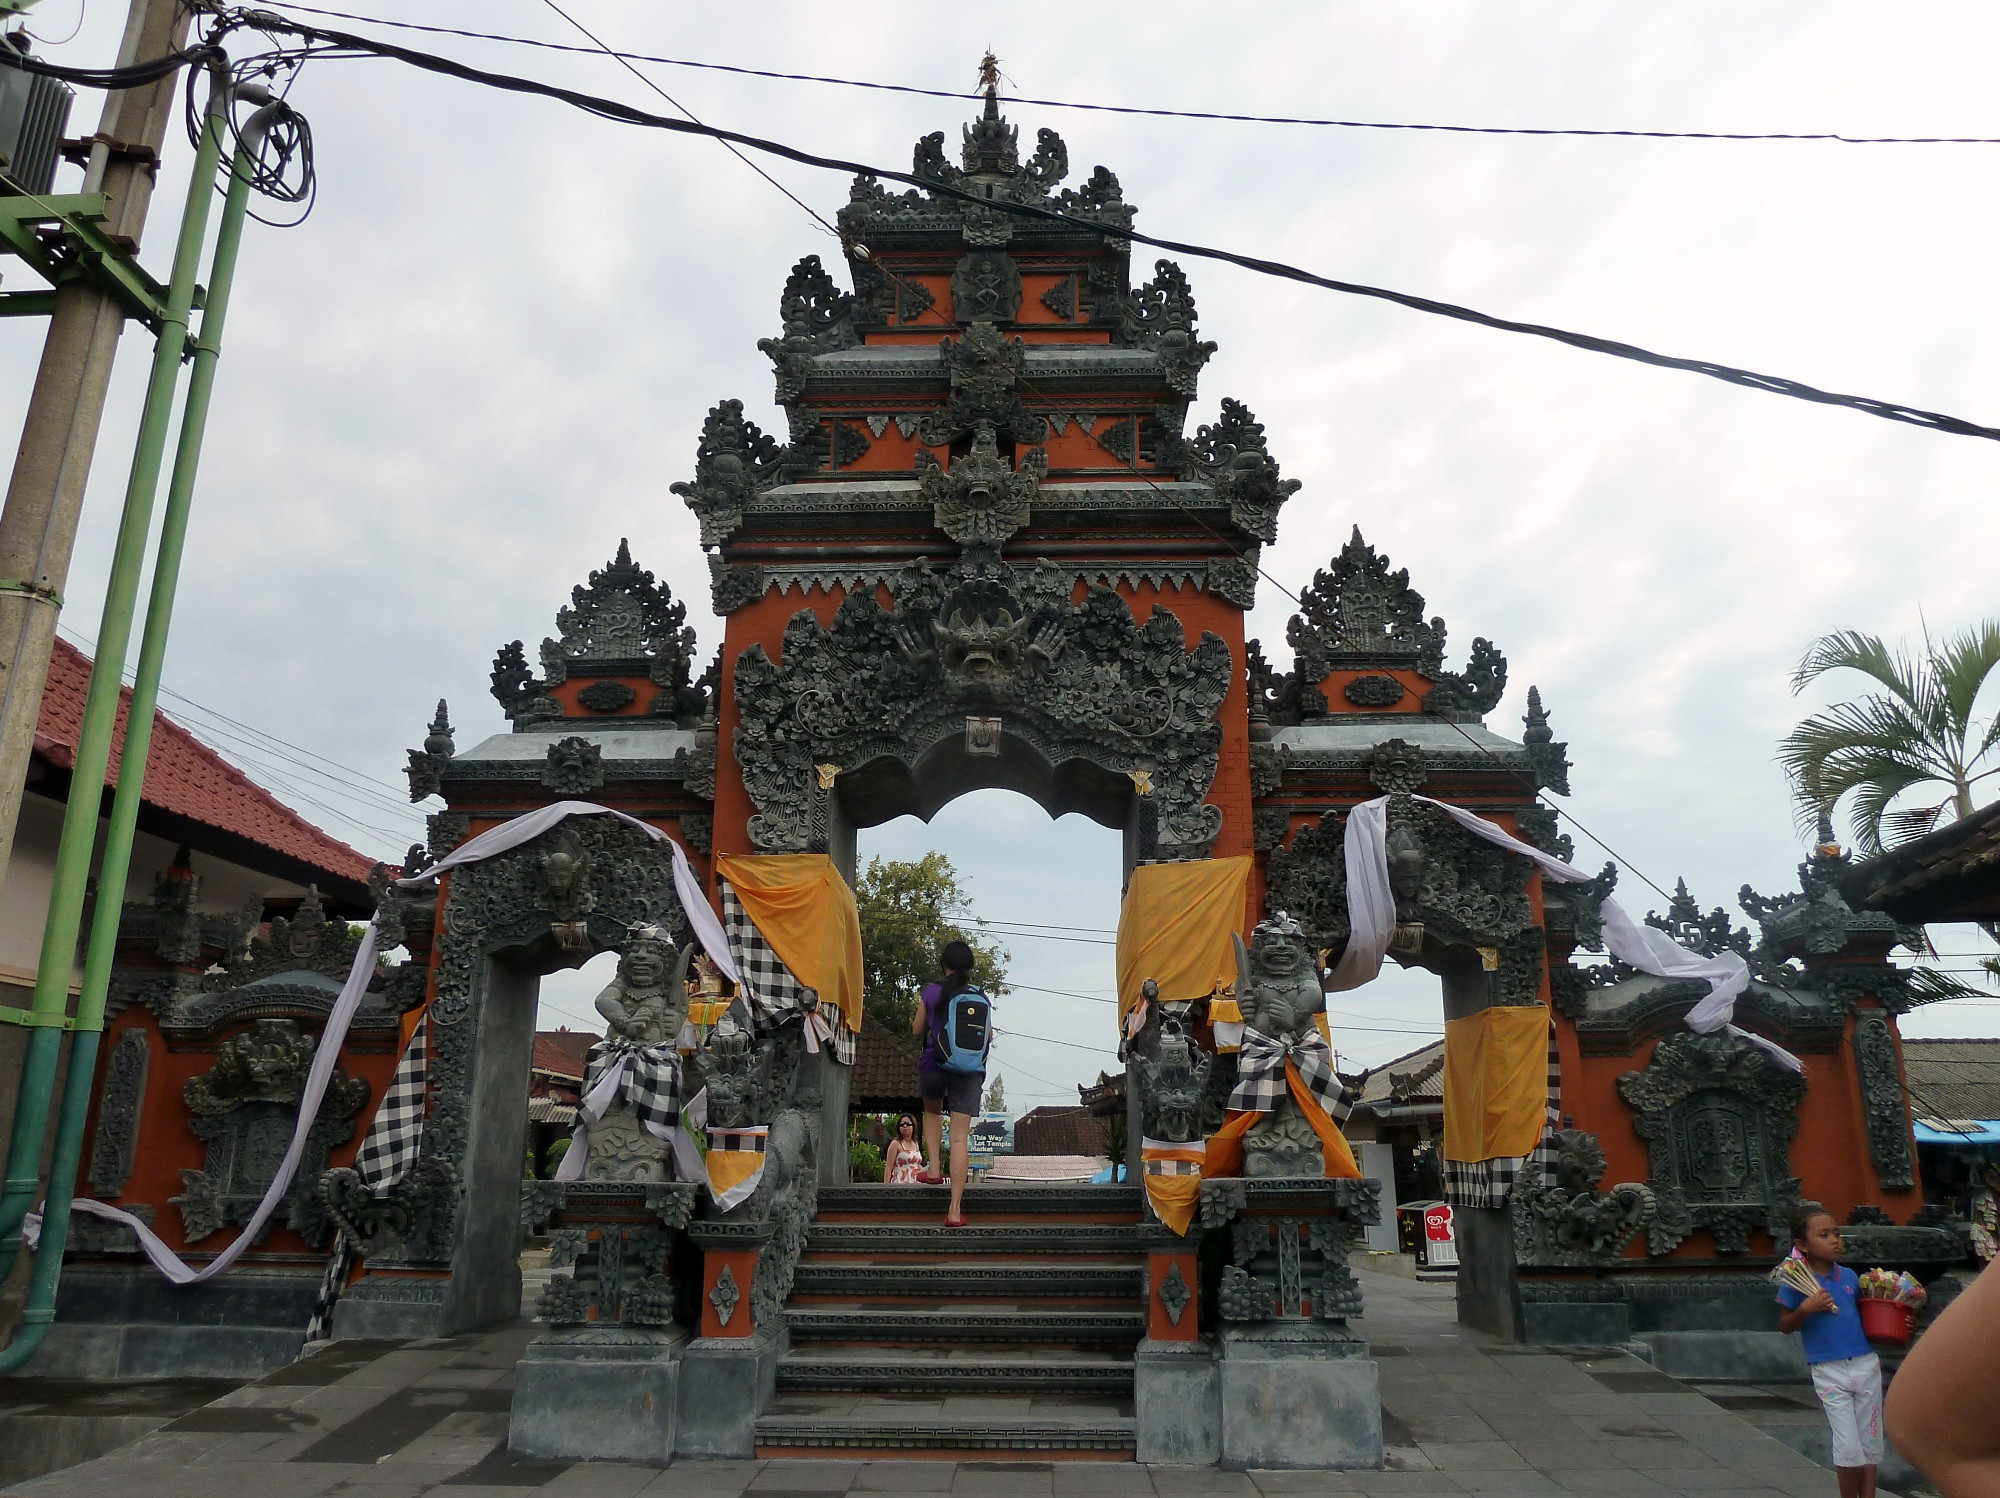 Temple Entrance Gate